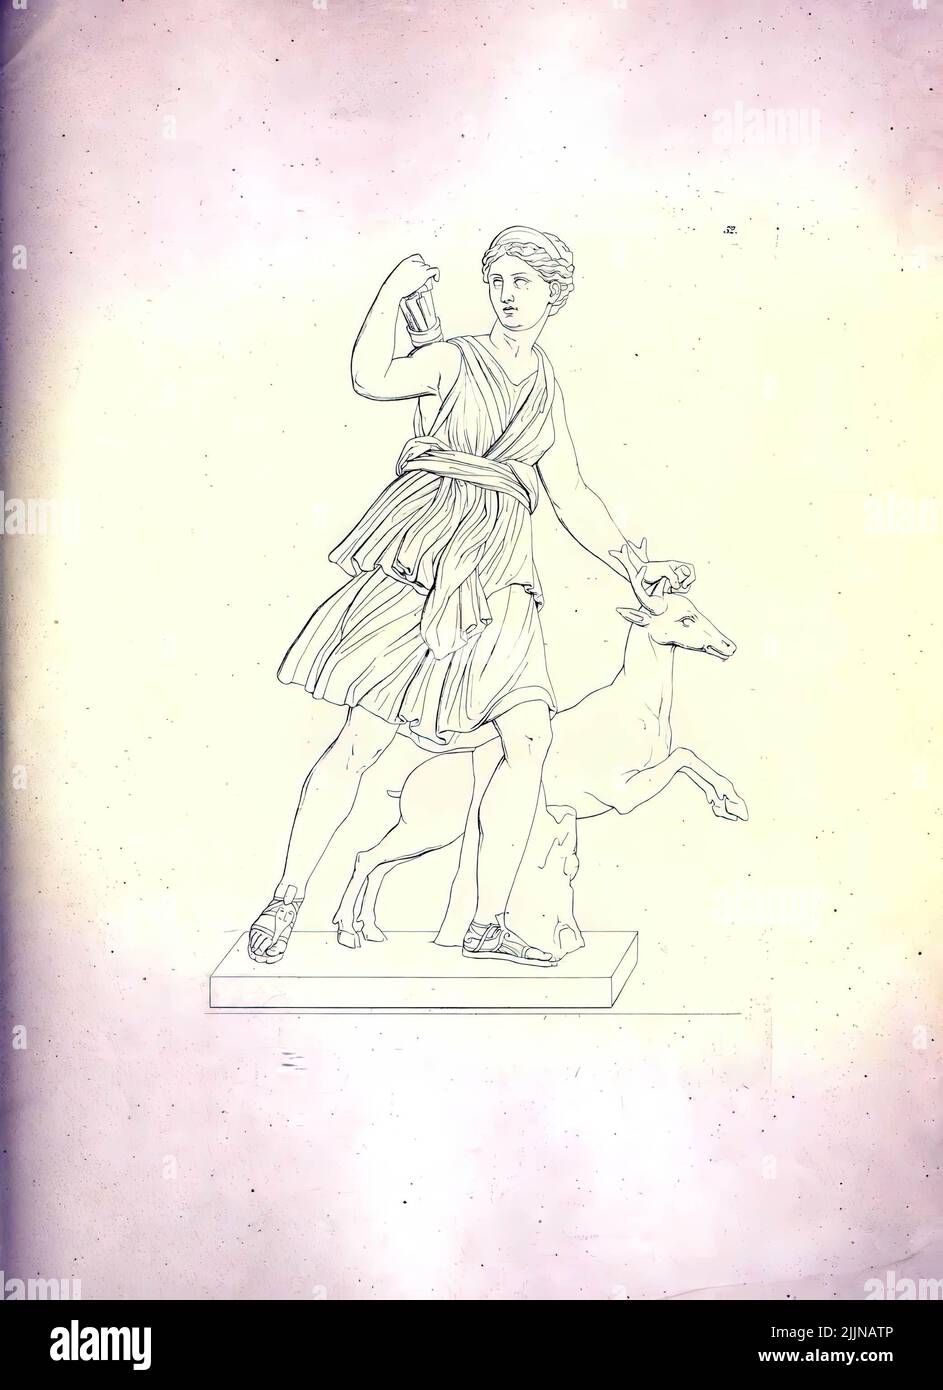 Une photo de the19th siècle illustration ancienne de l'Artemis la déesse des animaux sauvages et de la chasse Banque D'Images